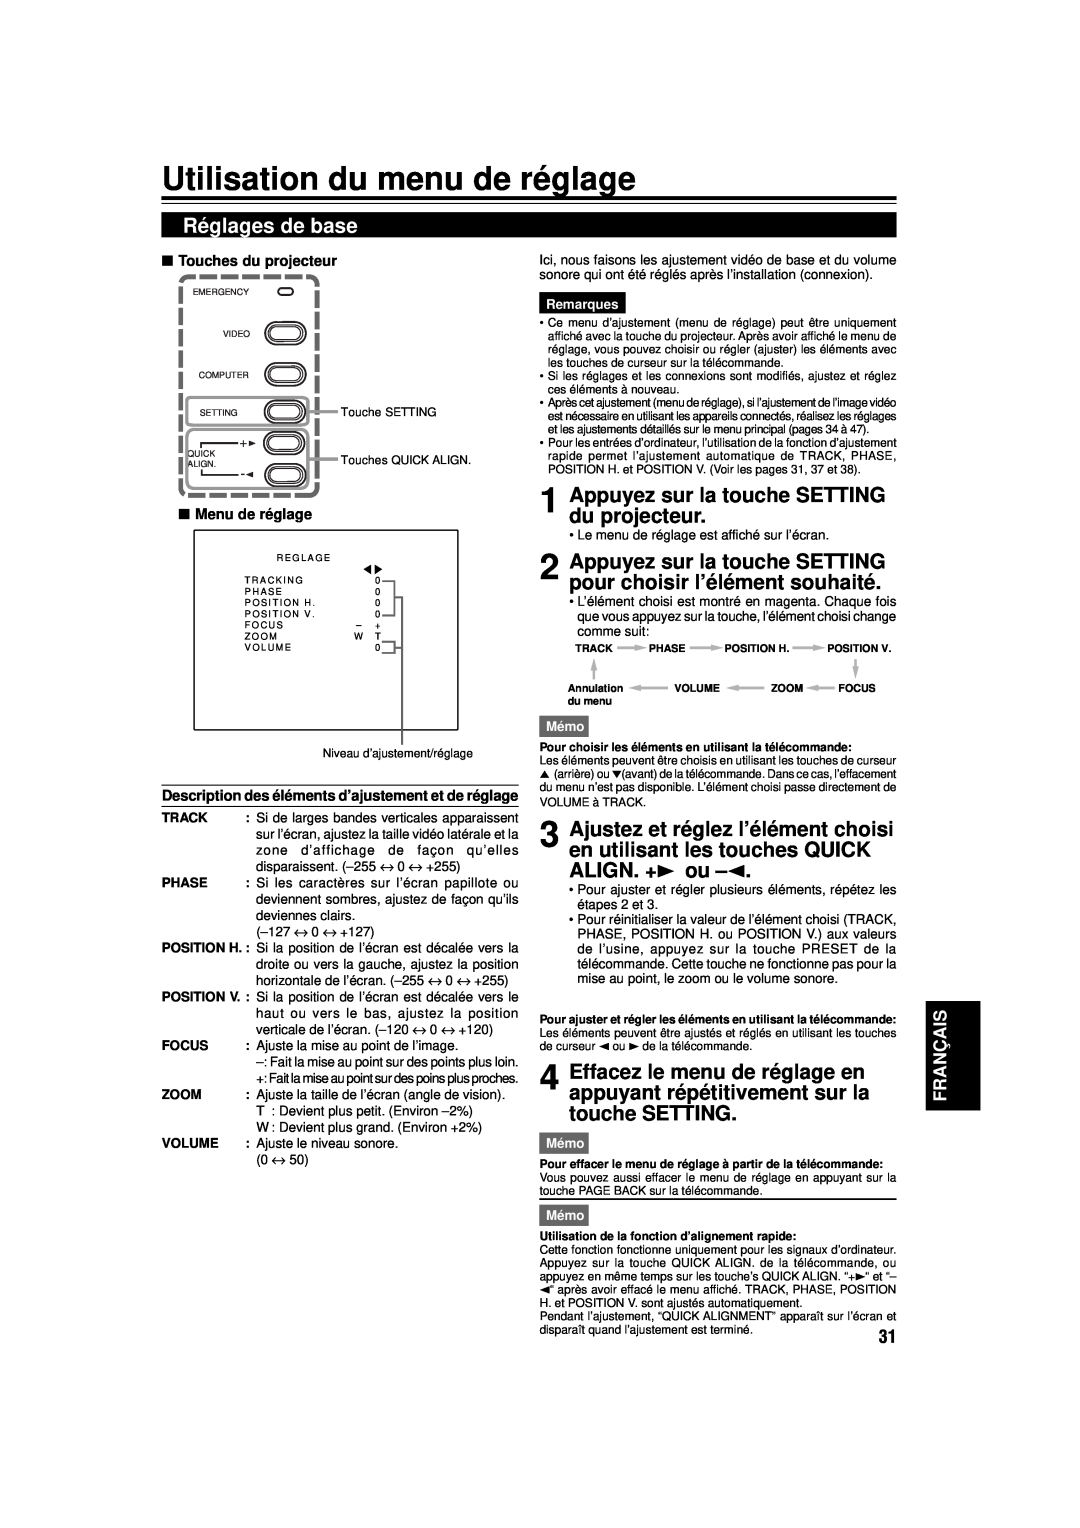 JVC DLA-M15U manual Utilisation du menu de réglage, Réglages de base, Appuyez sur la touche SETTING du projecteur 